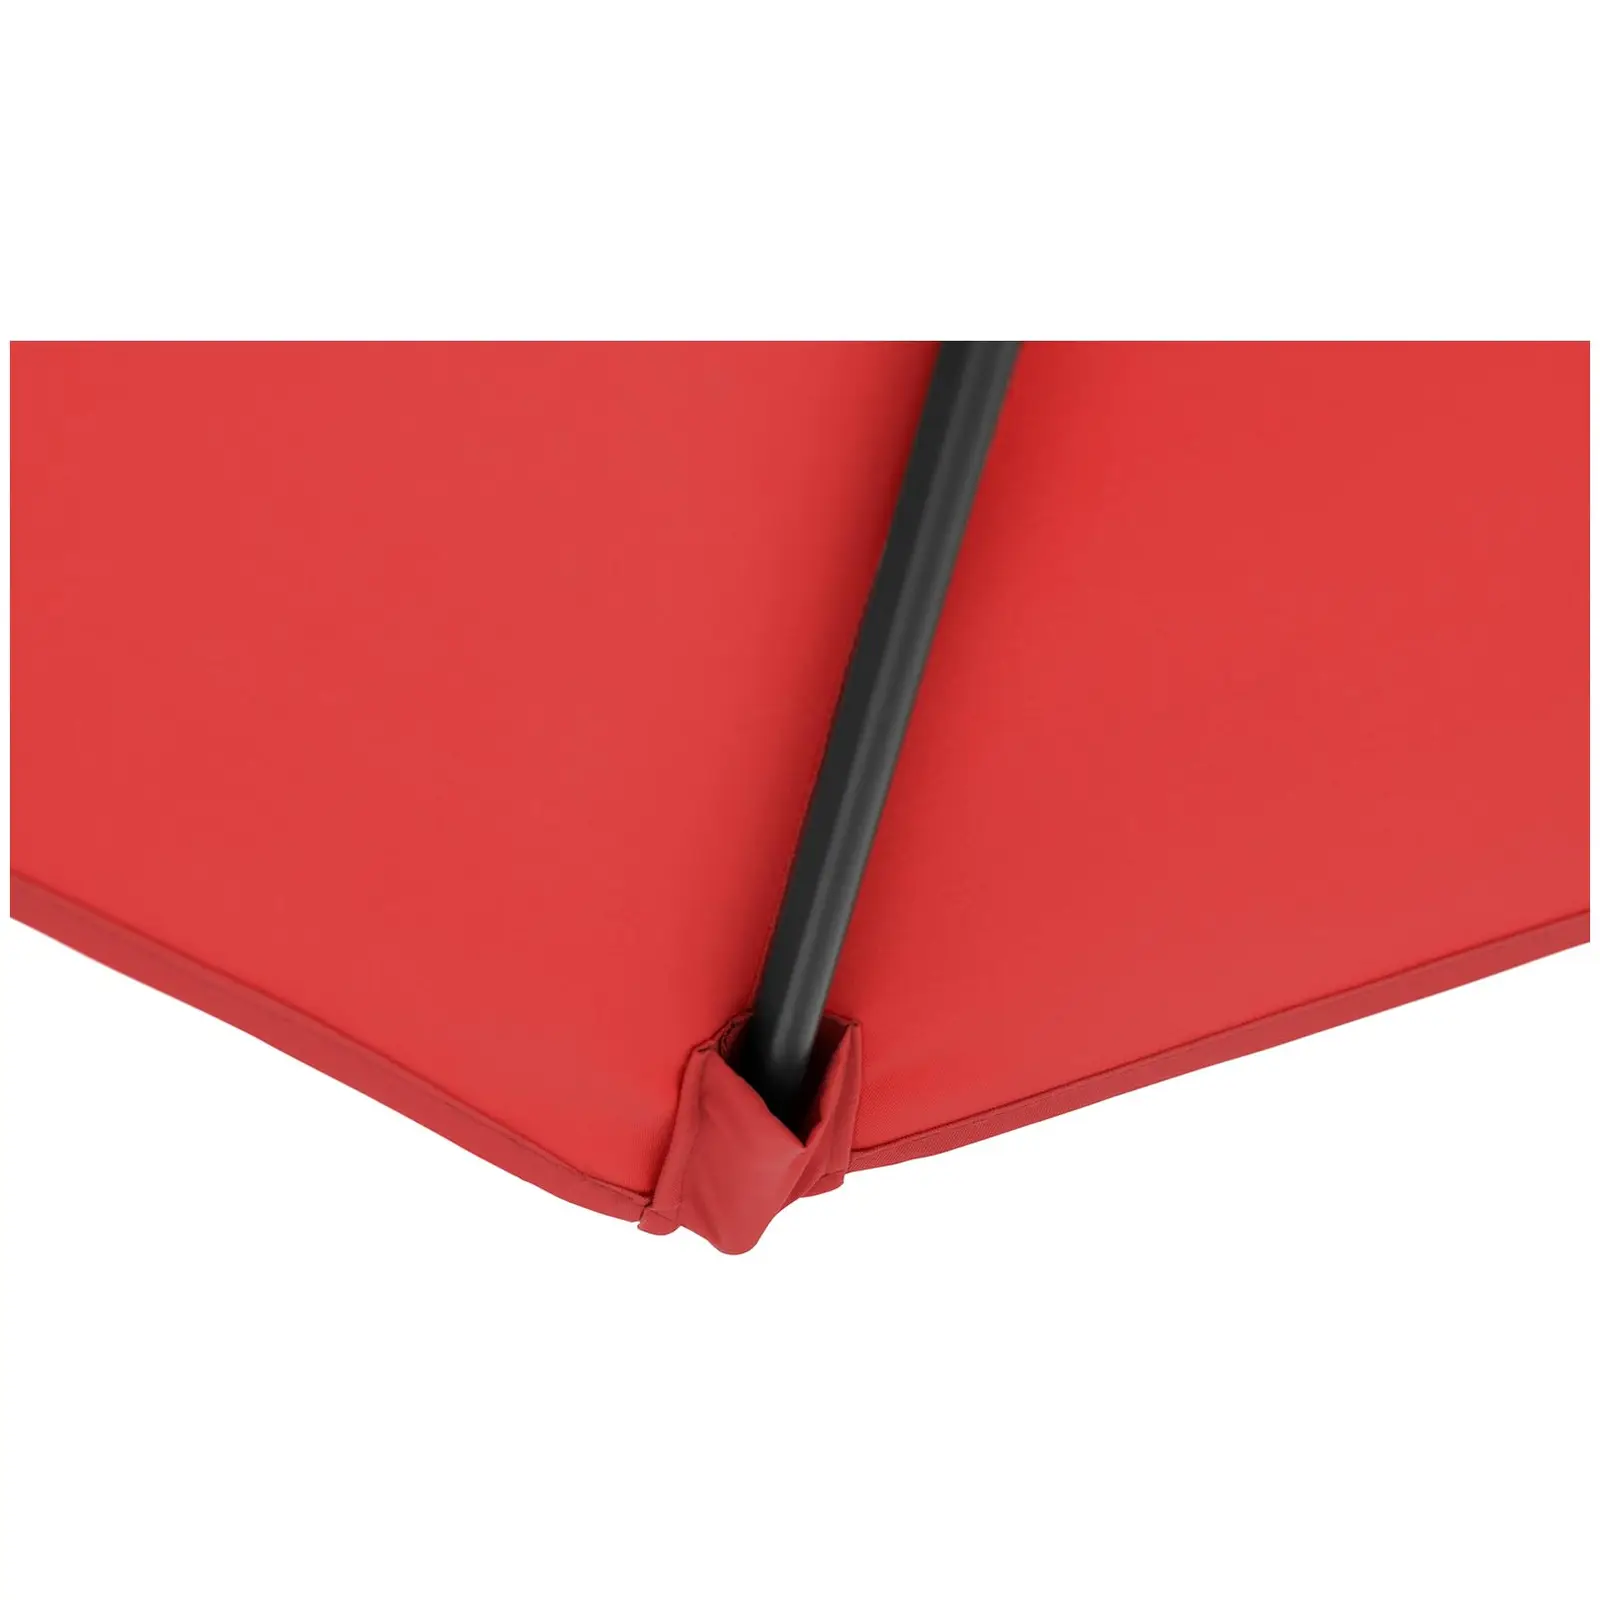 Andrahandssortering Hängparasoll - rött - rund - Ø 250 cm - vridbar